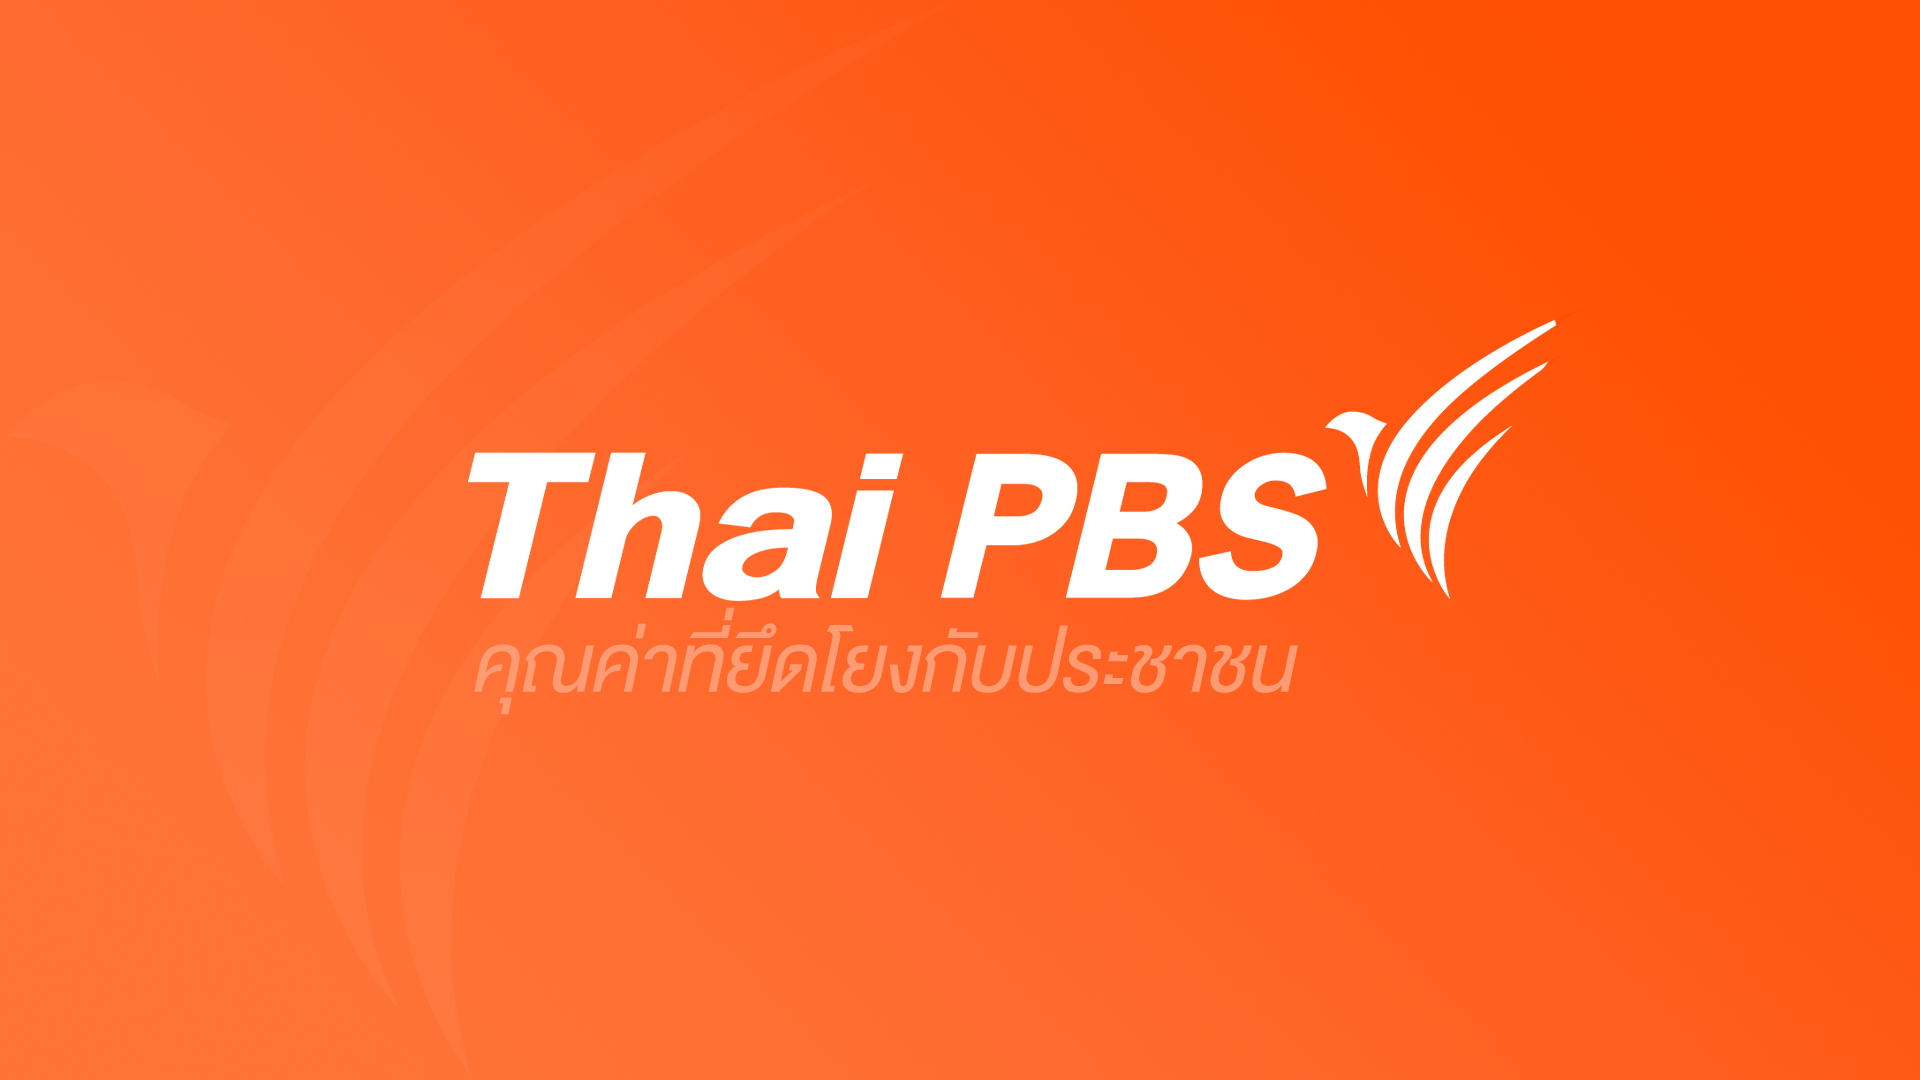 Thai PBS คุณค่าที่ยึดโยงกับประชาชน